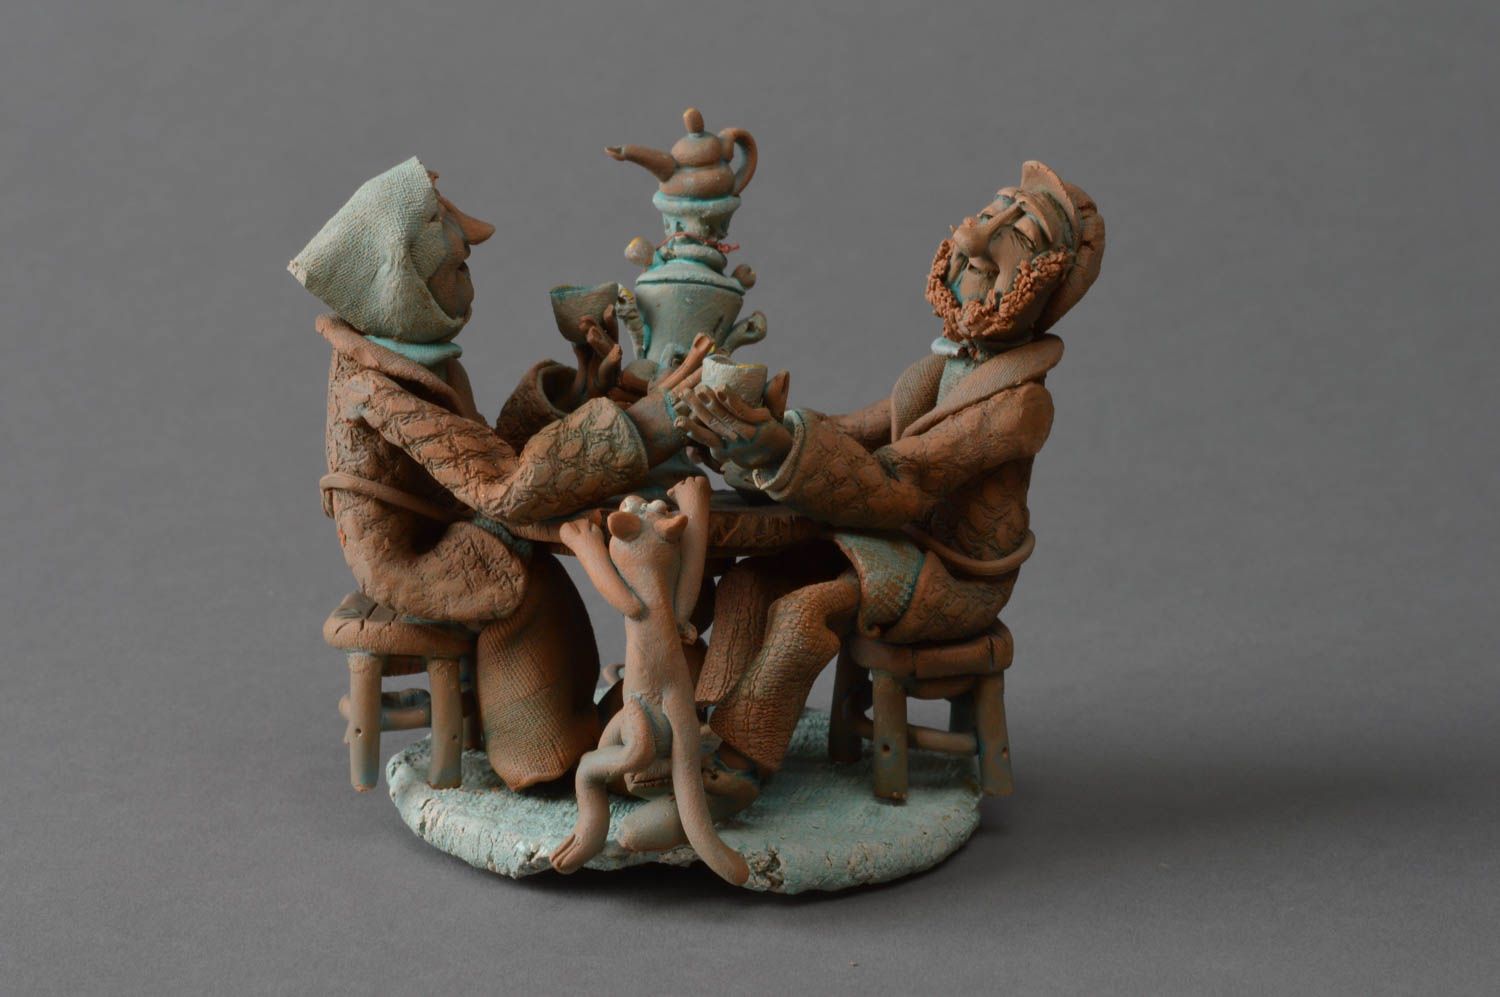 Красивая глиняная статуэтка забавная миниатюра ручной работы Веселое застолье фото 1